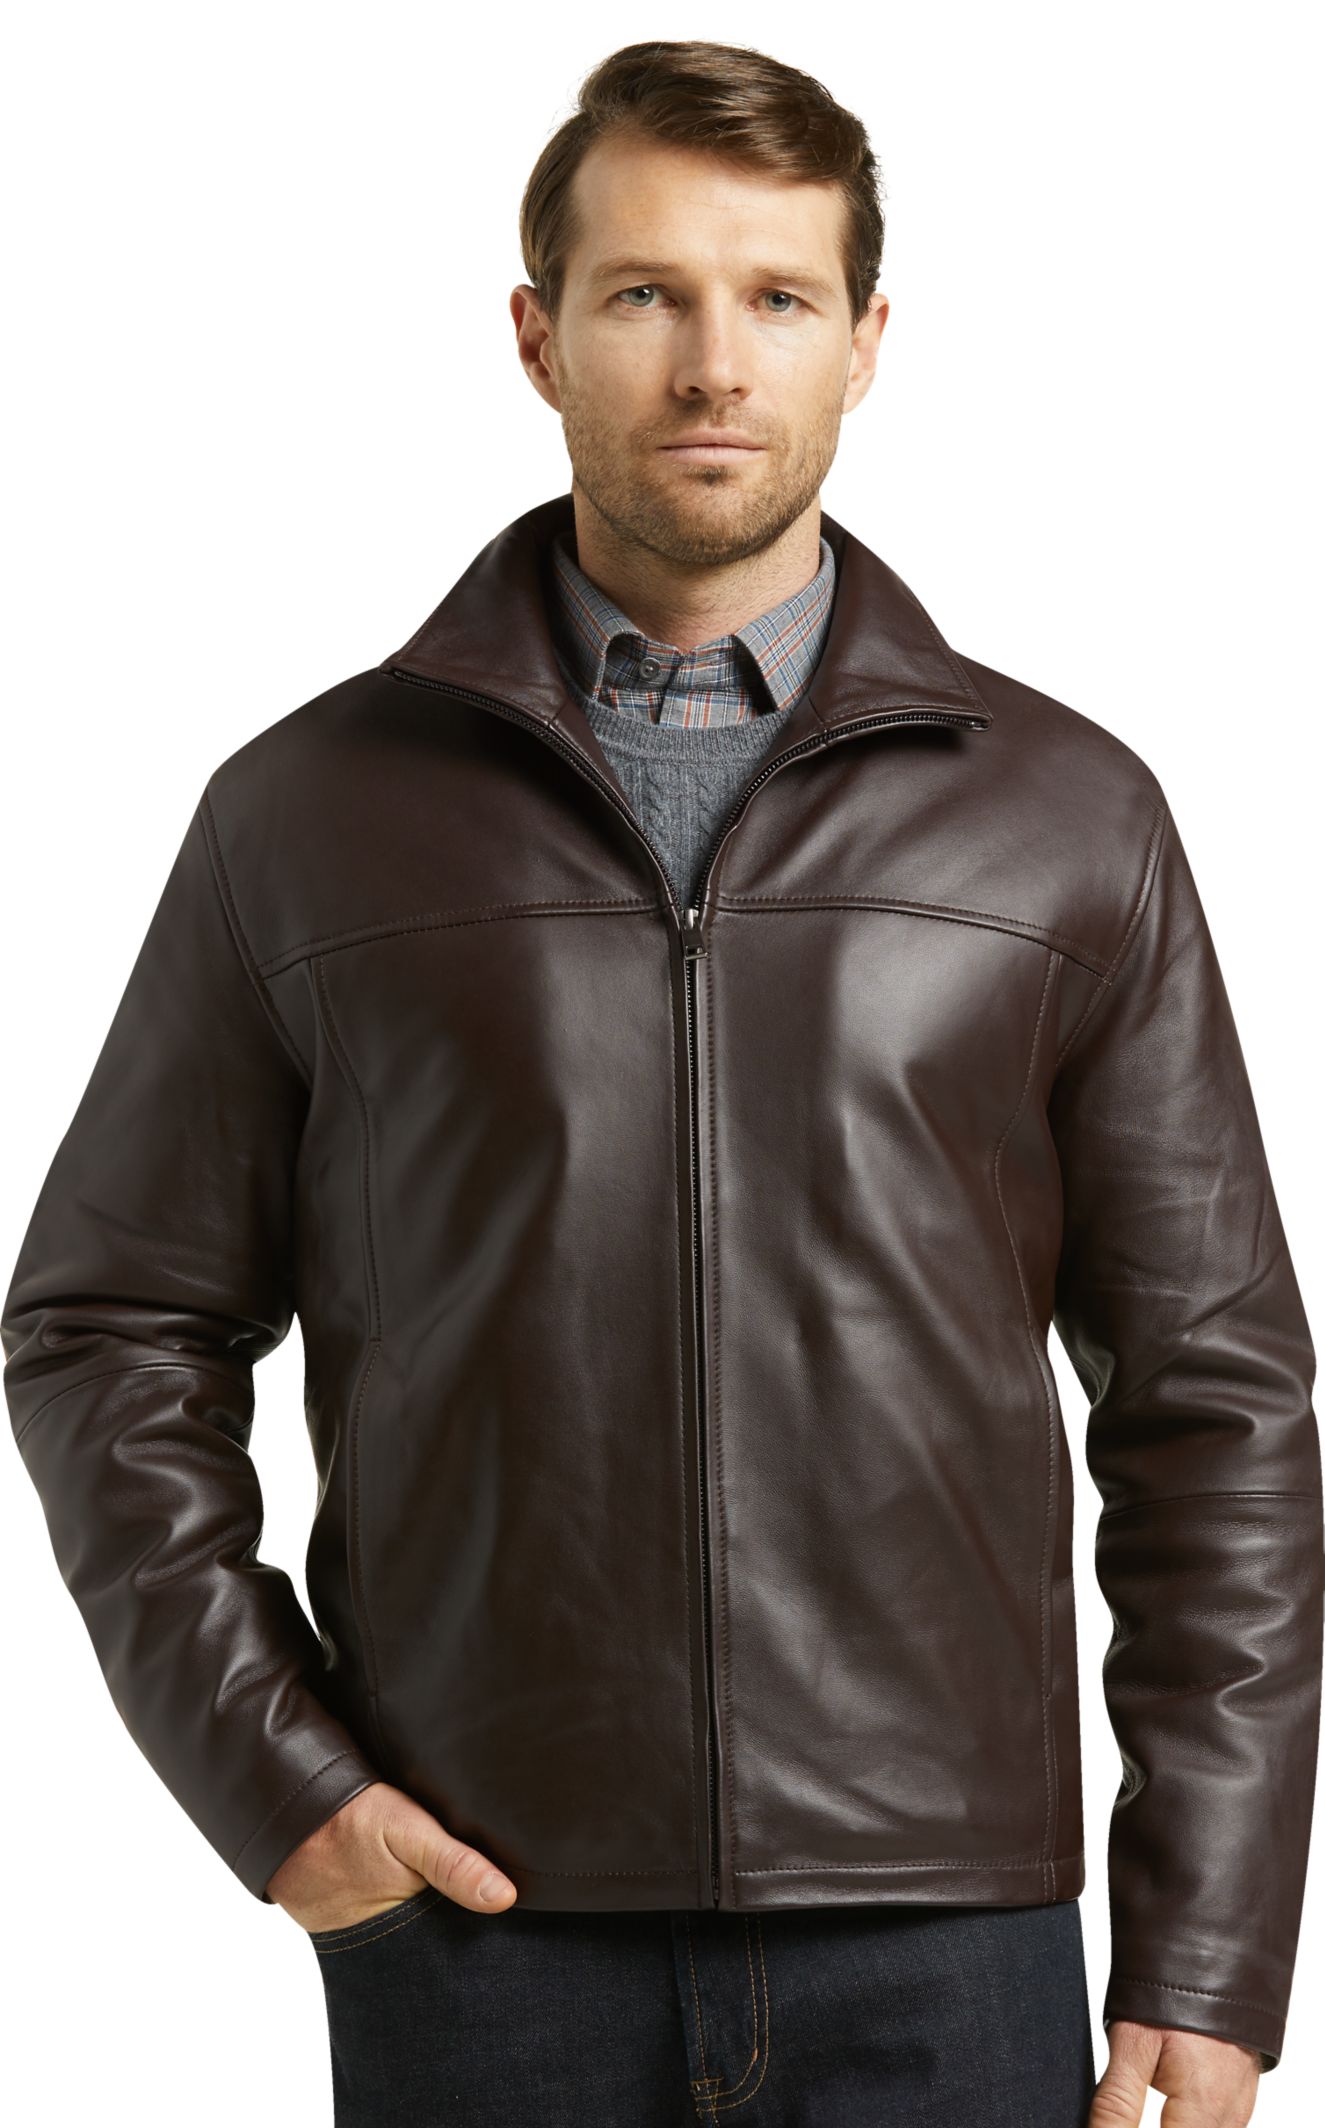 New Stylish Leather Jackets For Men - Shakal Blog